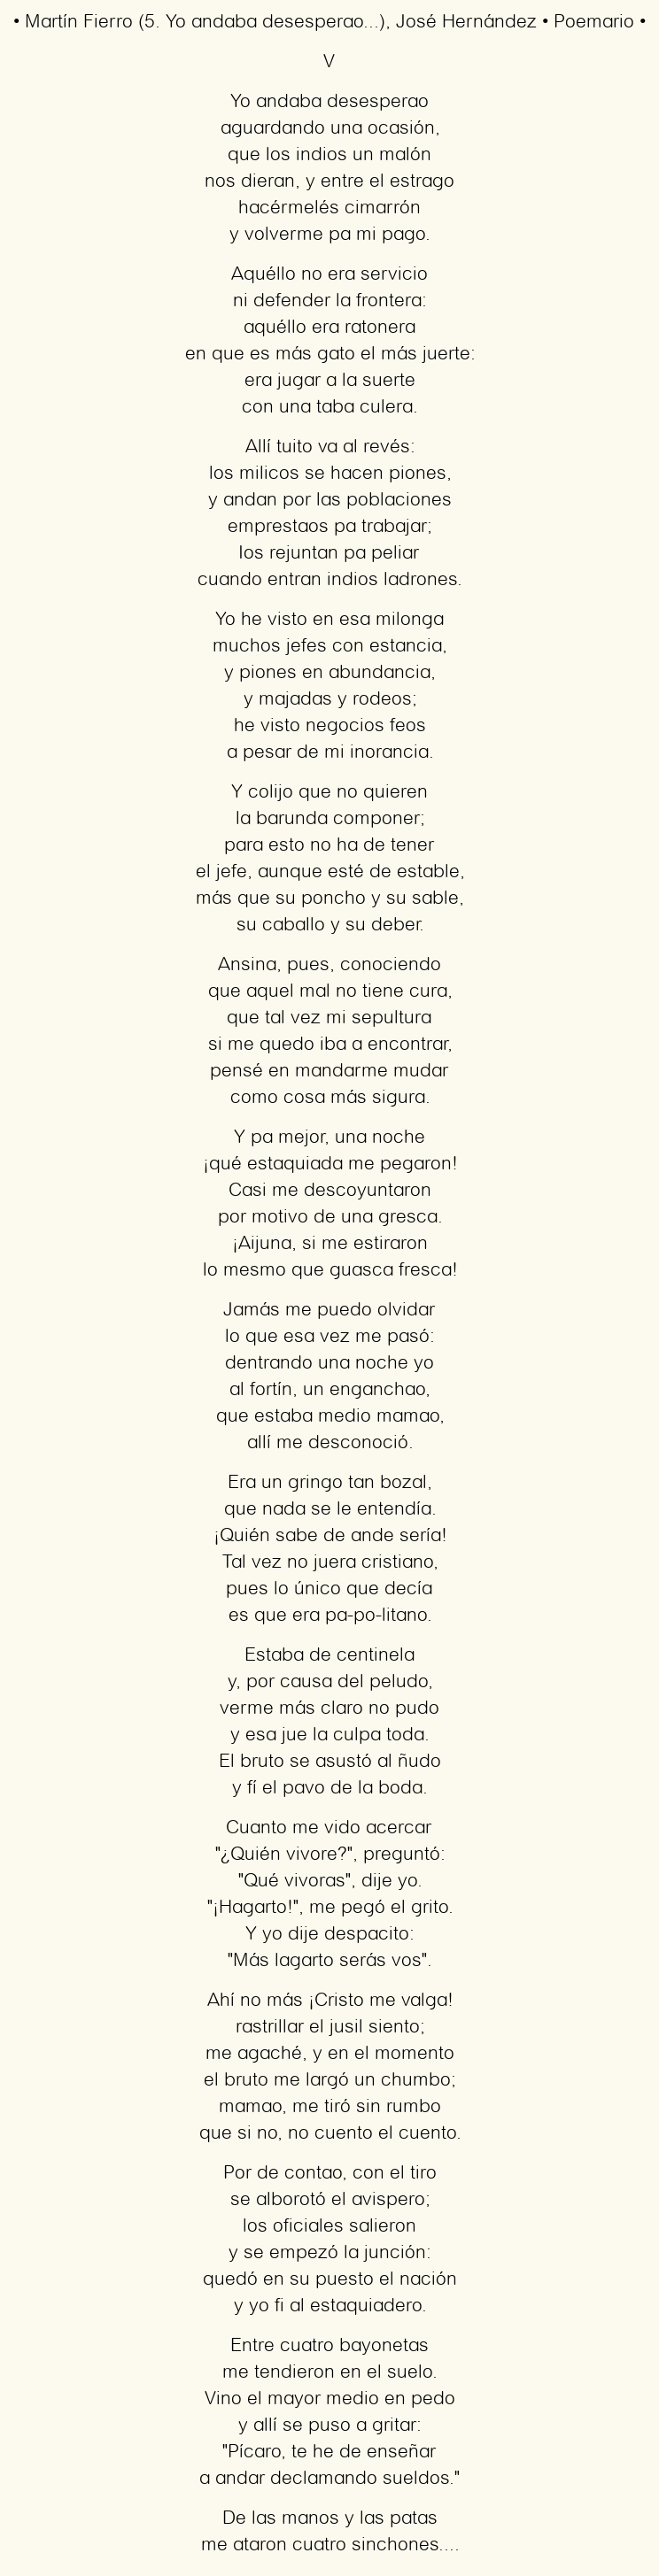 Imagen con el poema Martín Fierro (5. Yo andaba desesperao…), por José Hernández